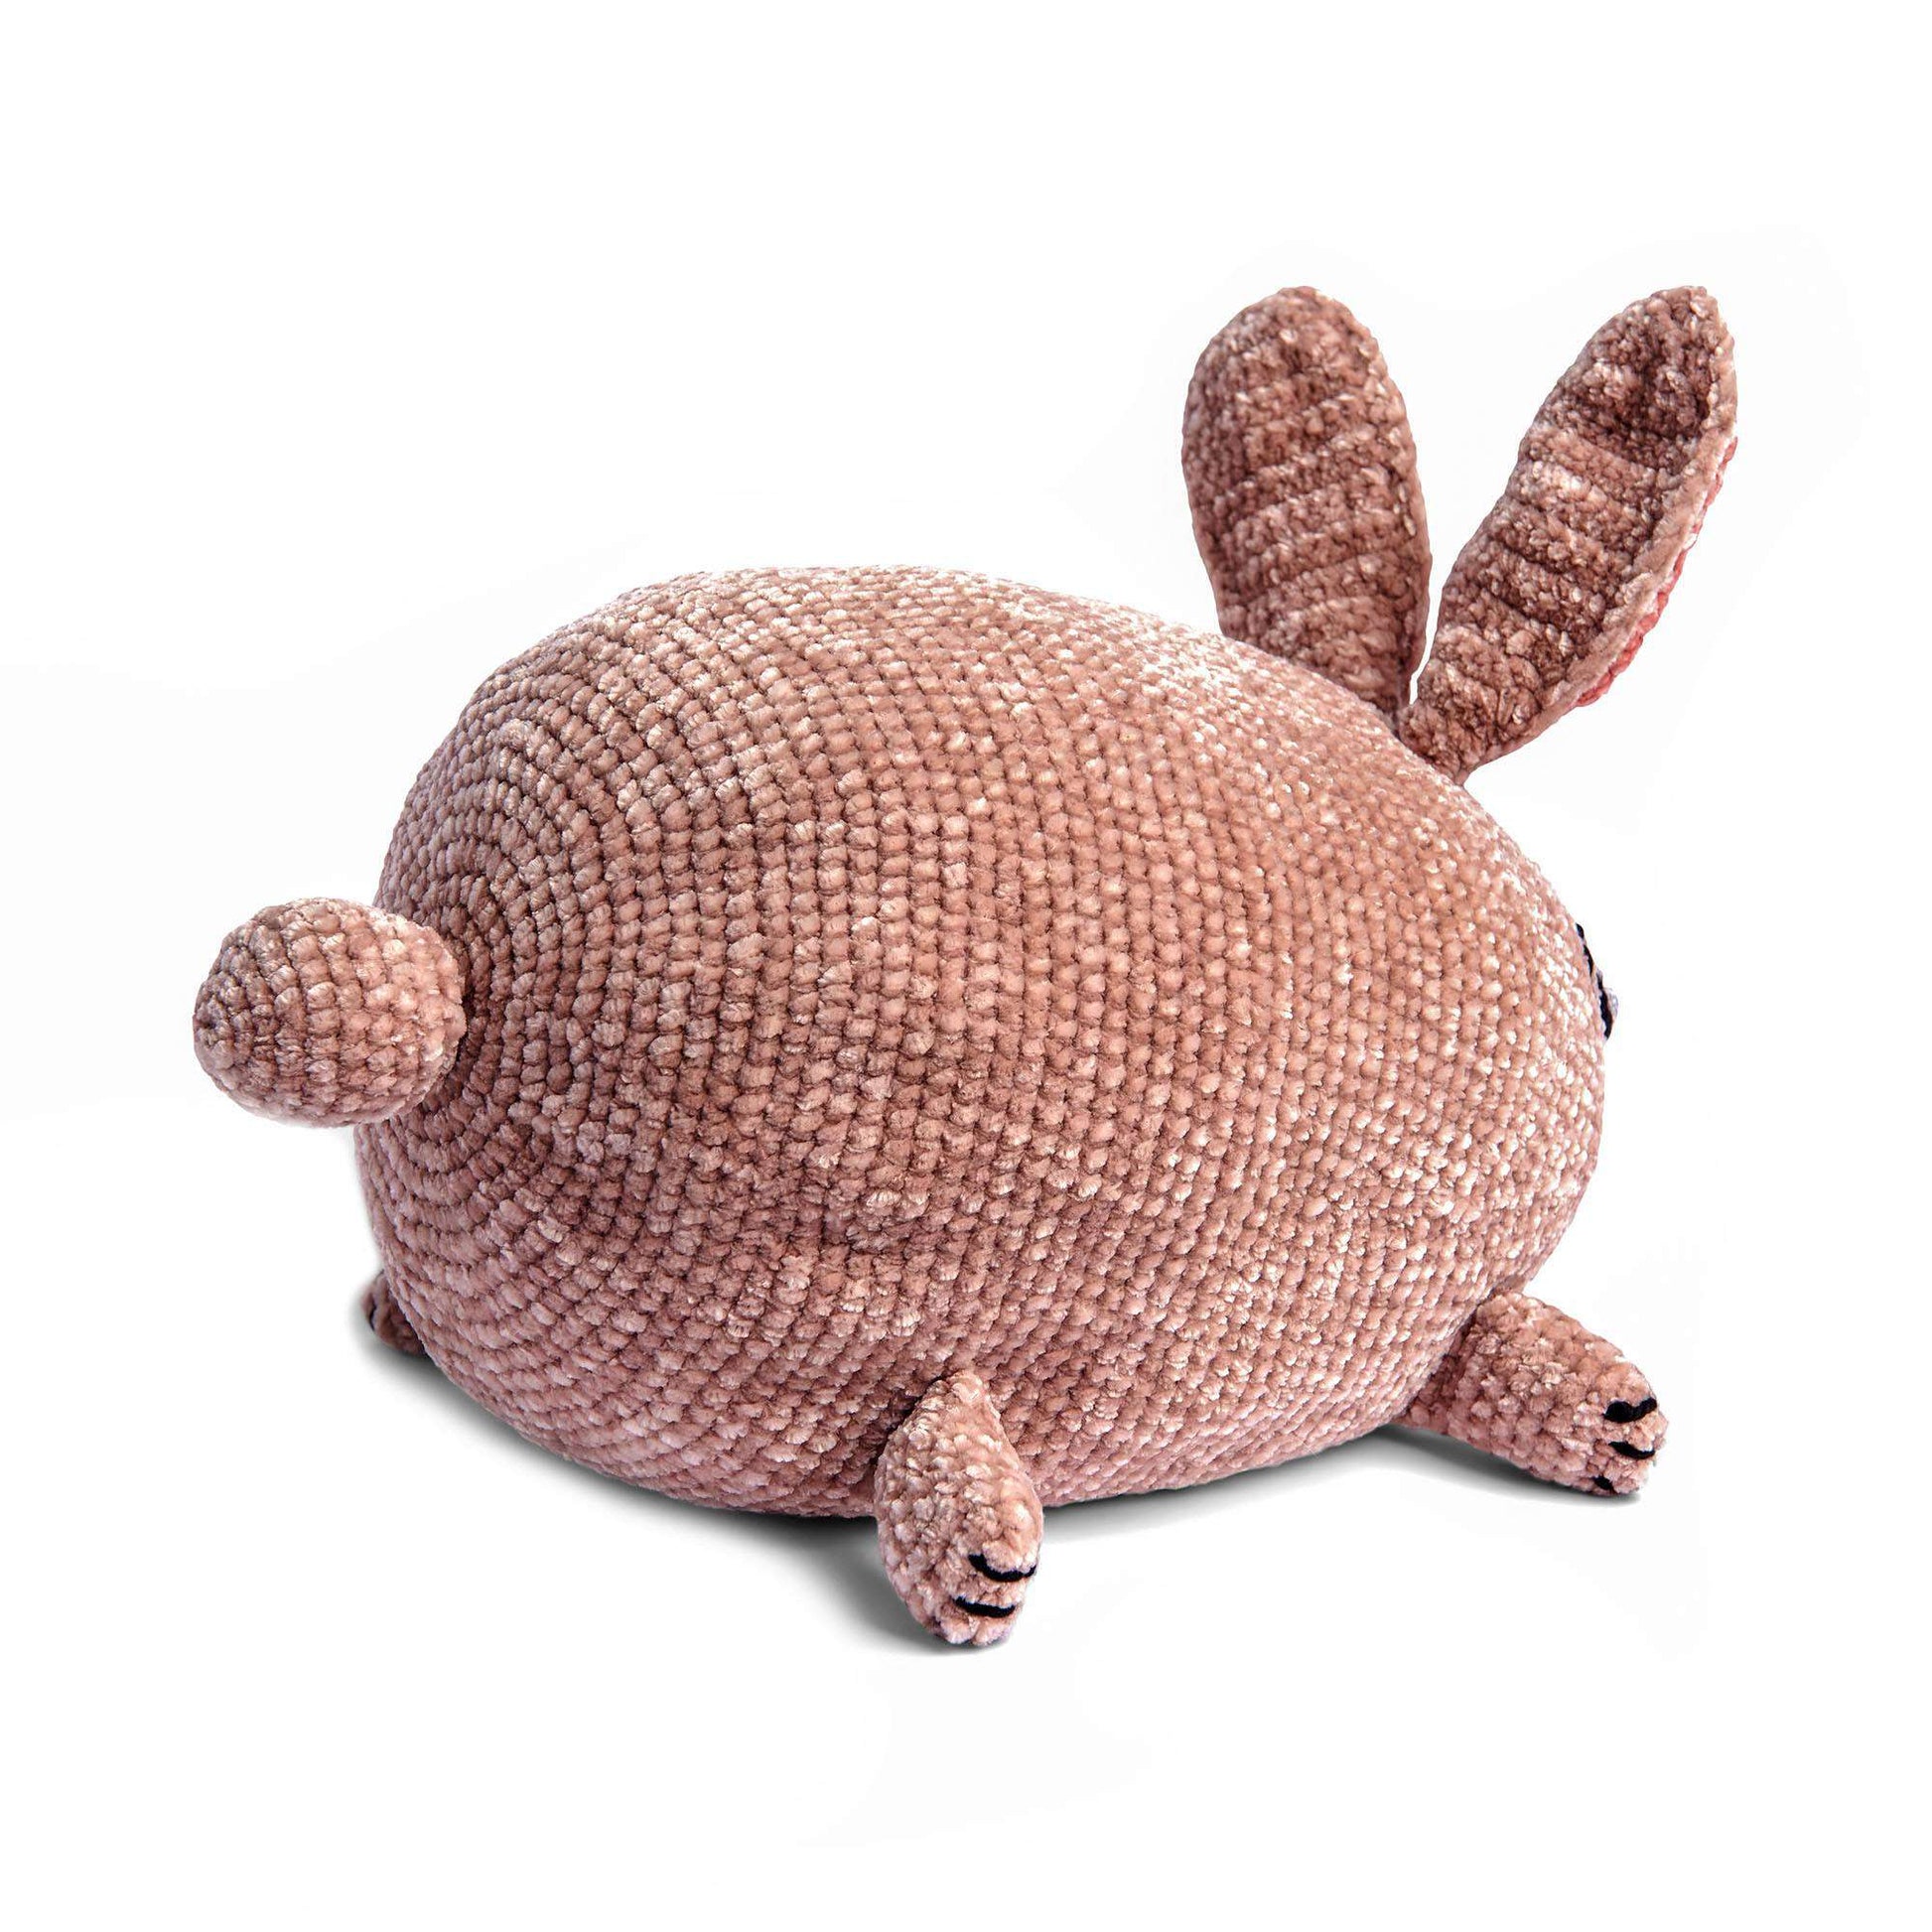 Bernat Crochet Bunny Stuffie Crochet Toy made in Bernat Baby Velvet yarn